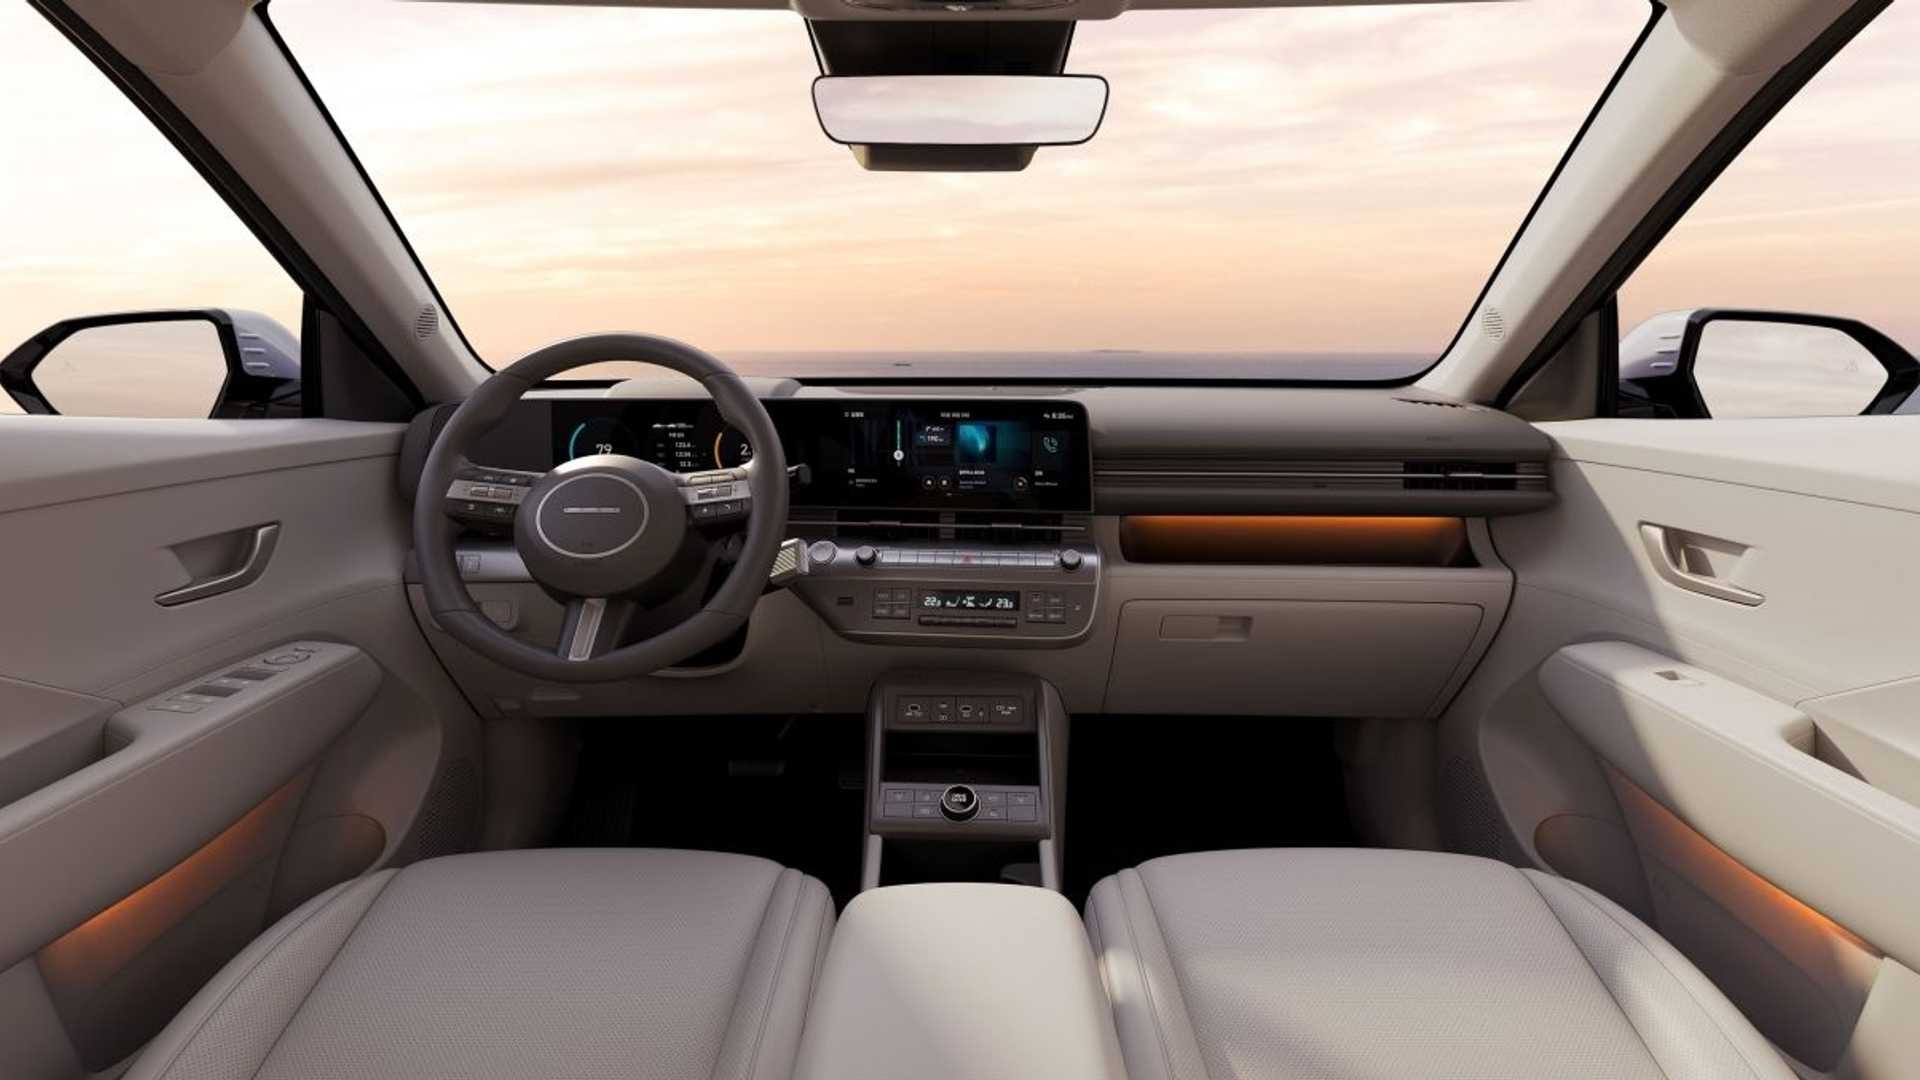 Yeni Hyundai Kona'nın detayları ve motor seçenekleri paylaşıldı